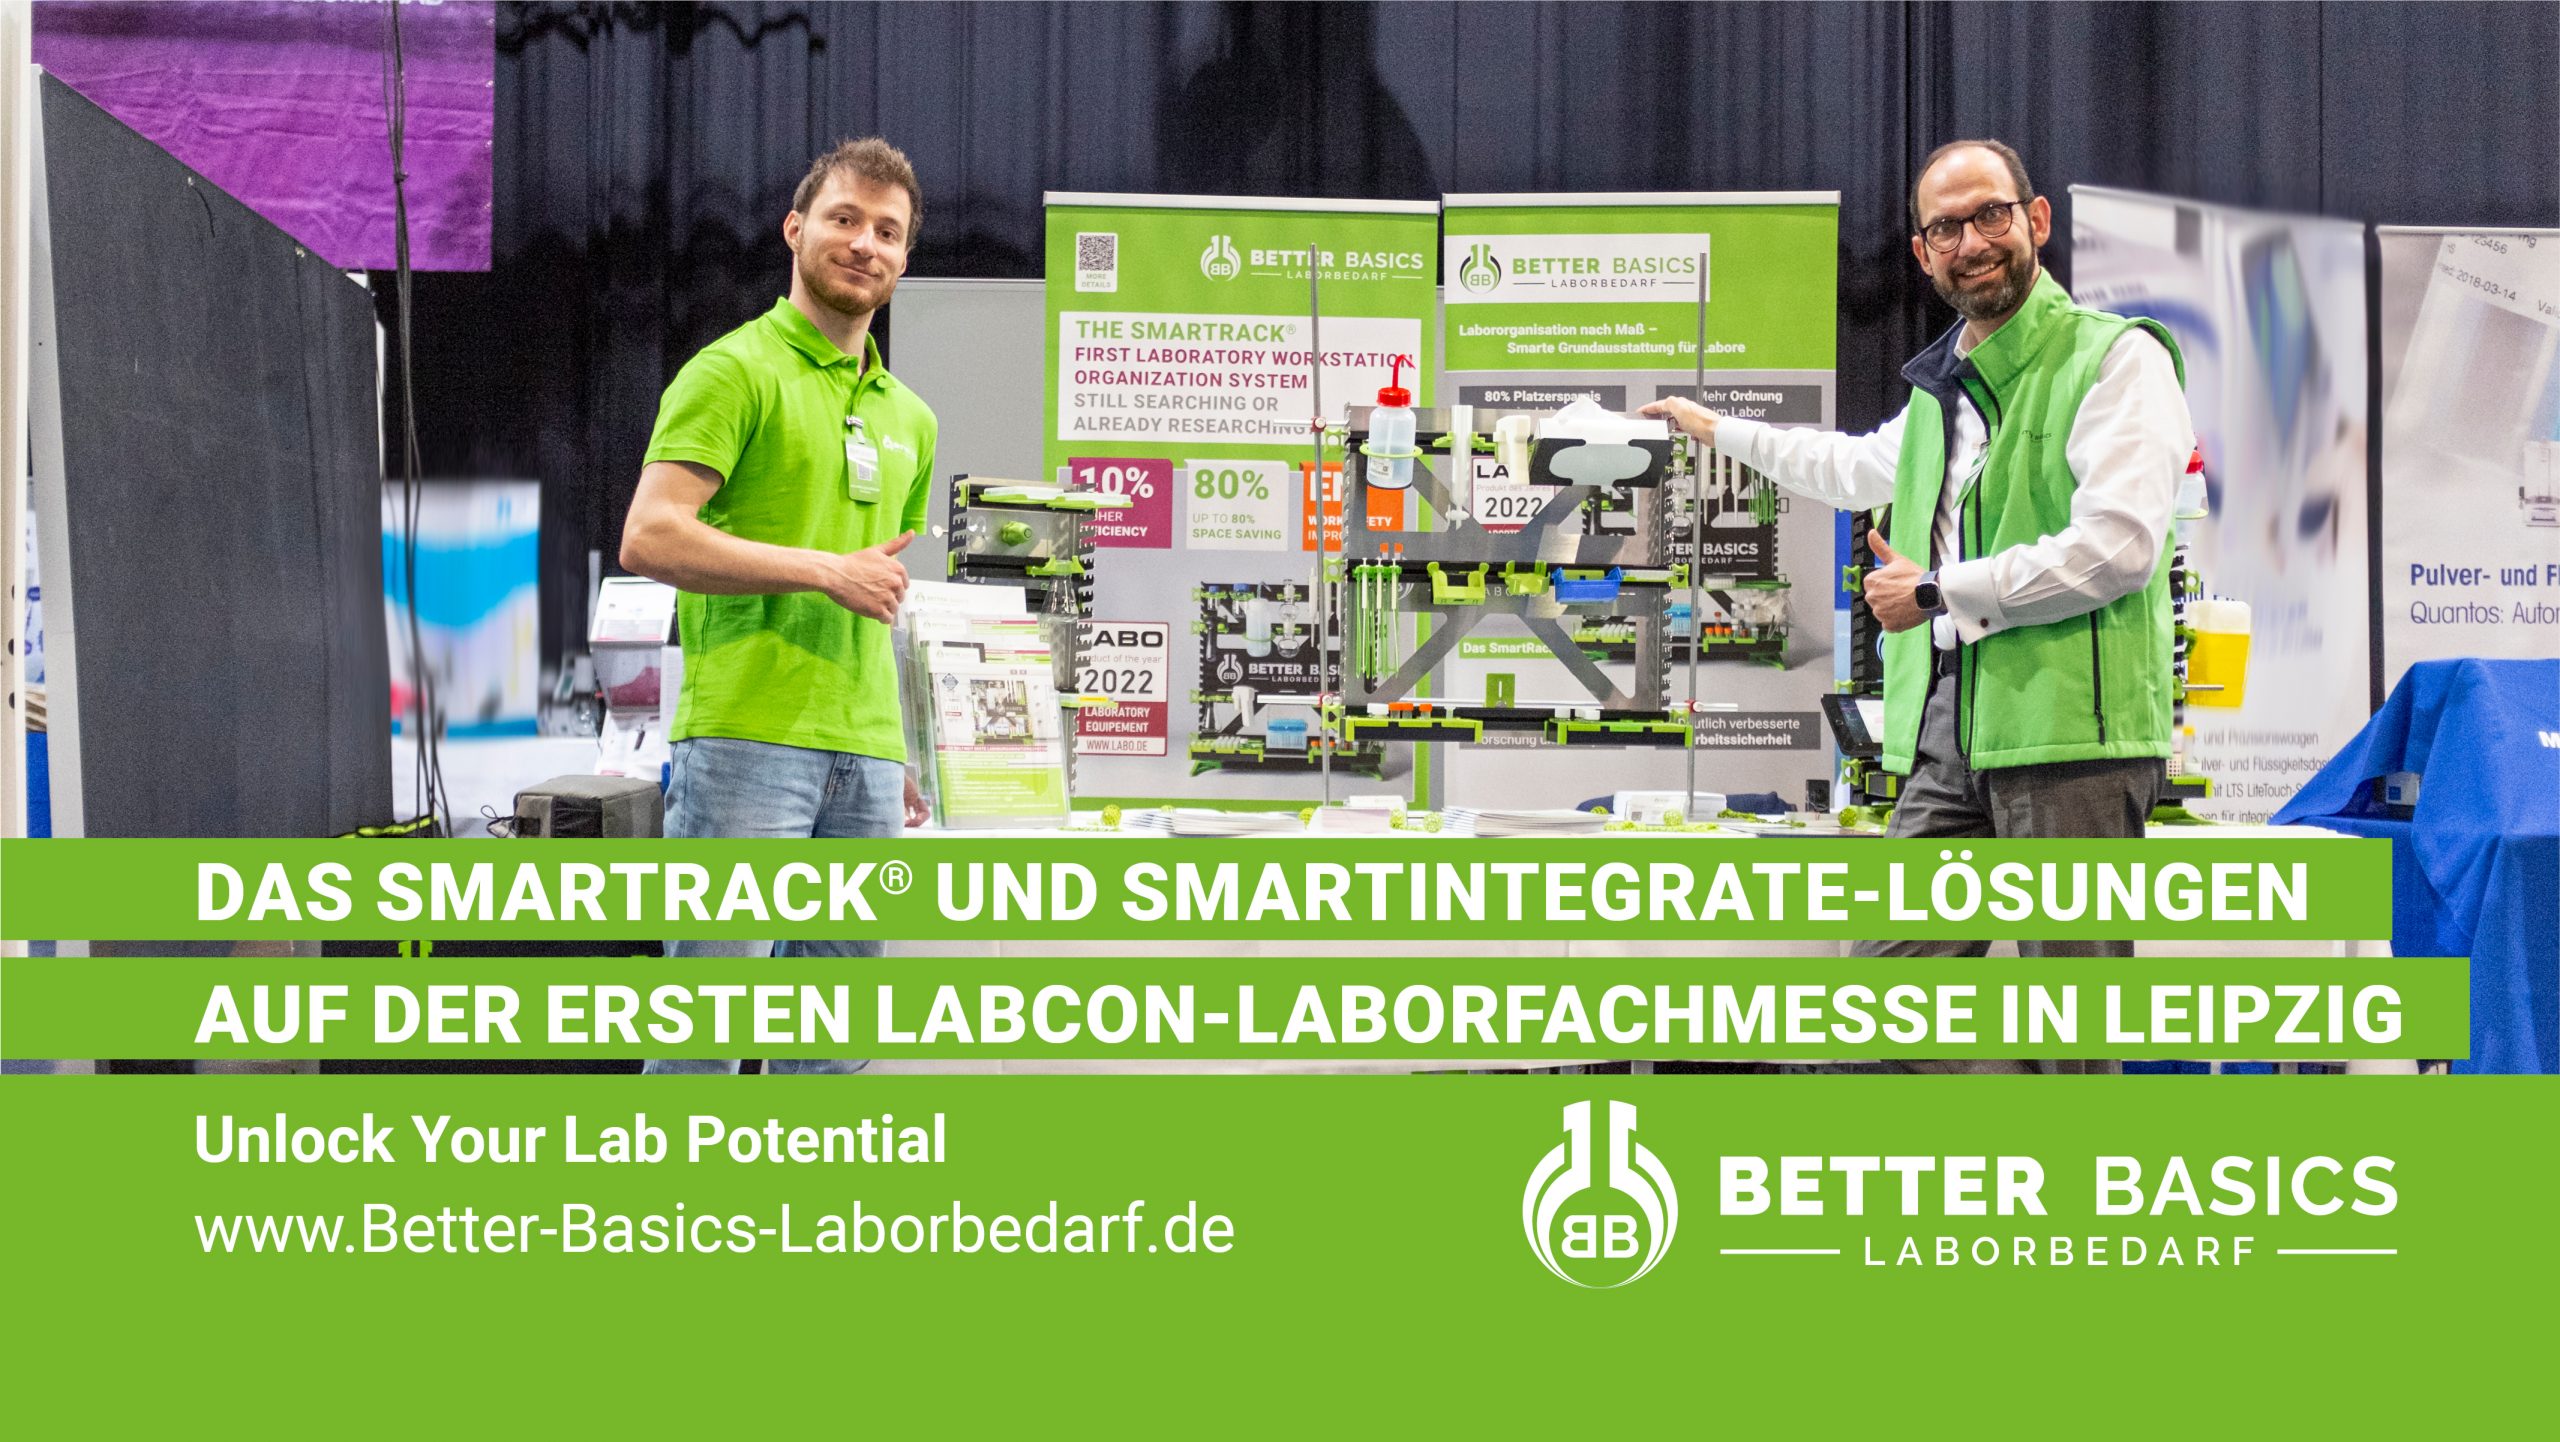 Das SmartRack® und SmartIntegrate-Lösungen auf der ersten LabCon-Laborfachmesse in Leipzig